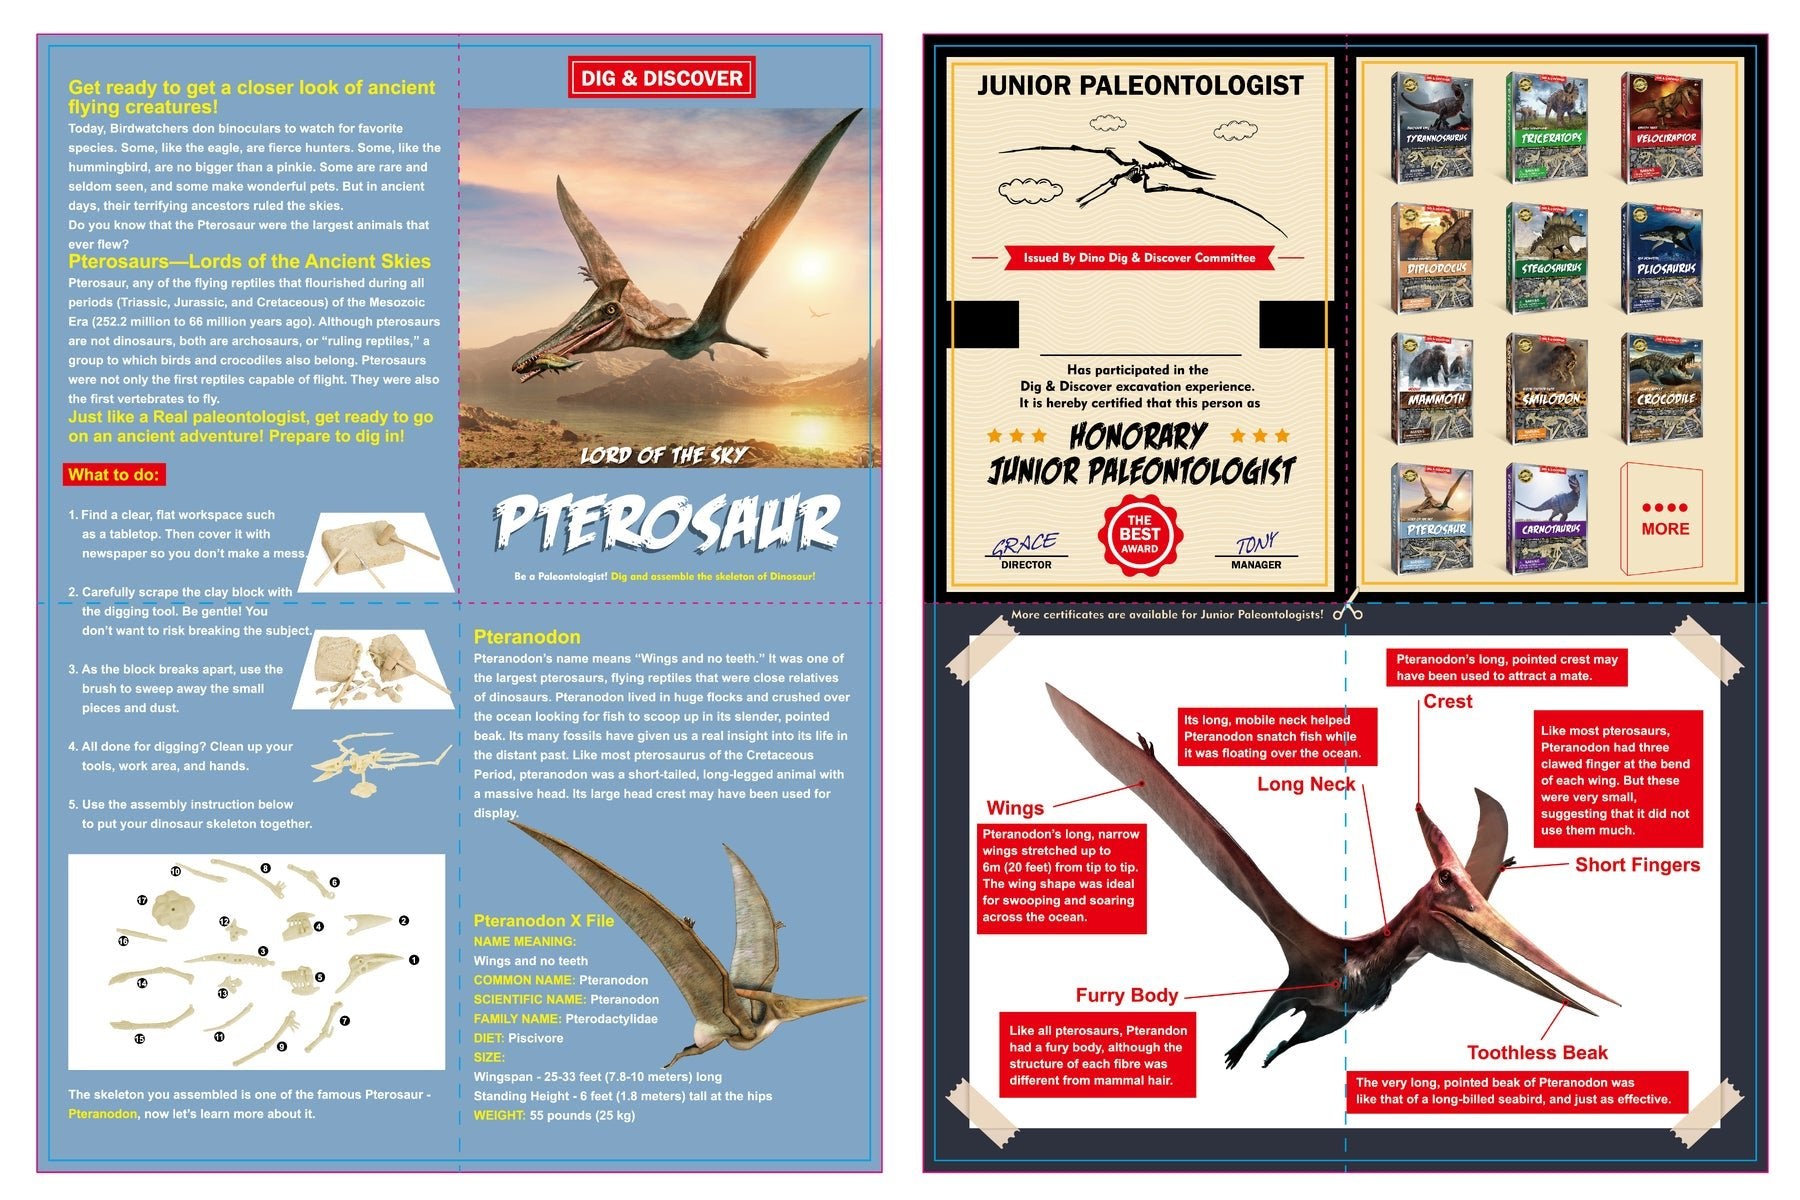 Assemble Your Own Pterosaur